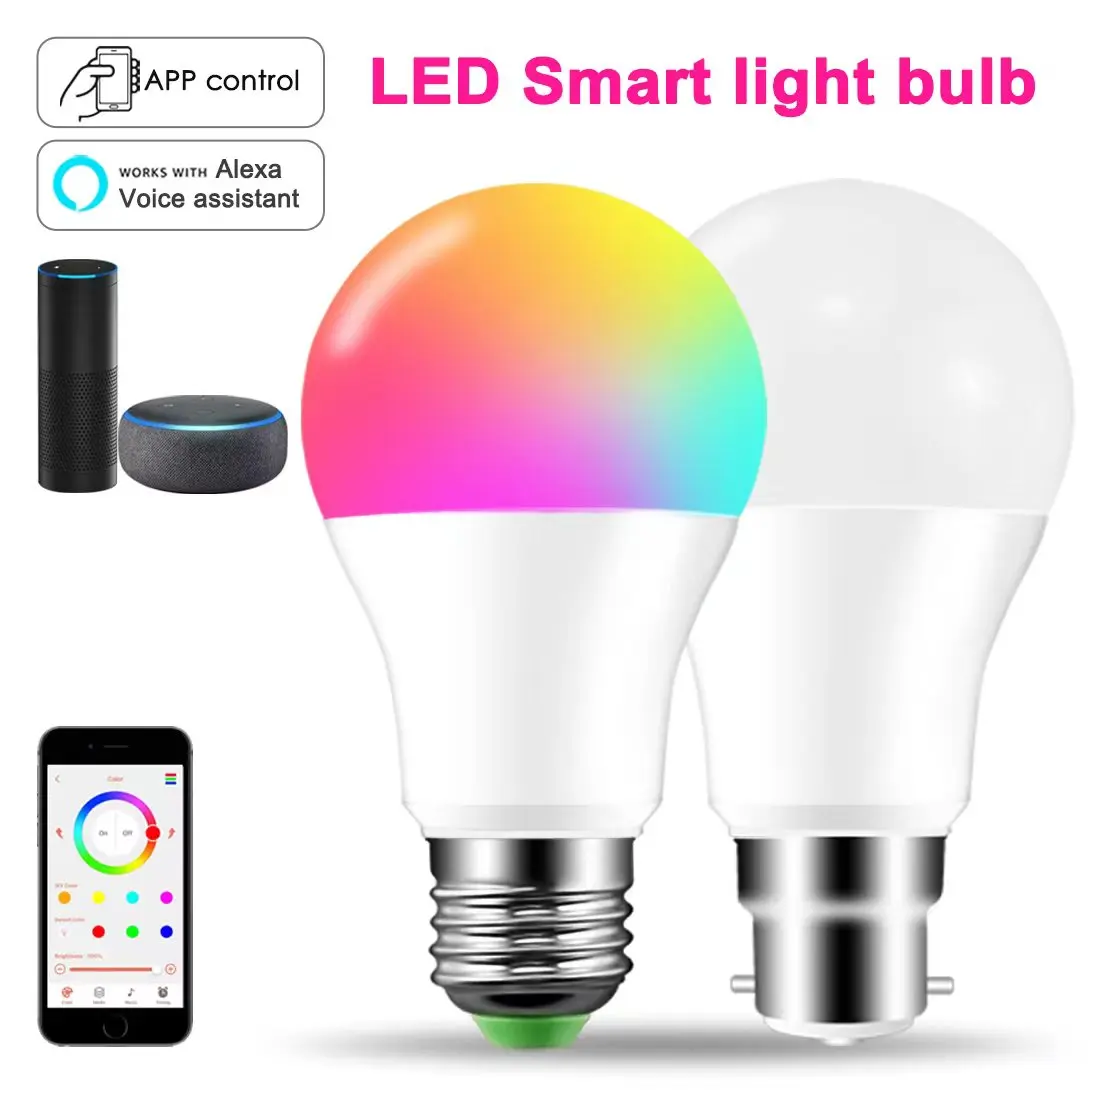 Tanie Inteligentna żarówka LED LED, zmiana koloru Alexa Light, inteligentna lampa sklep